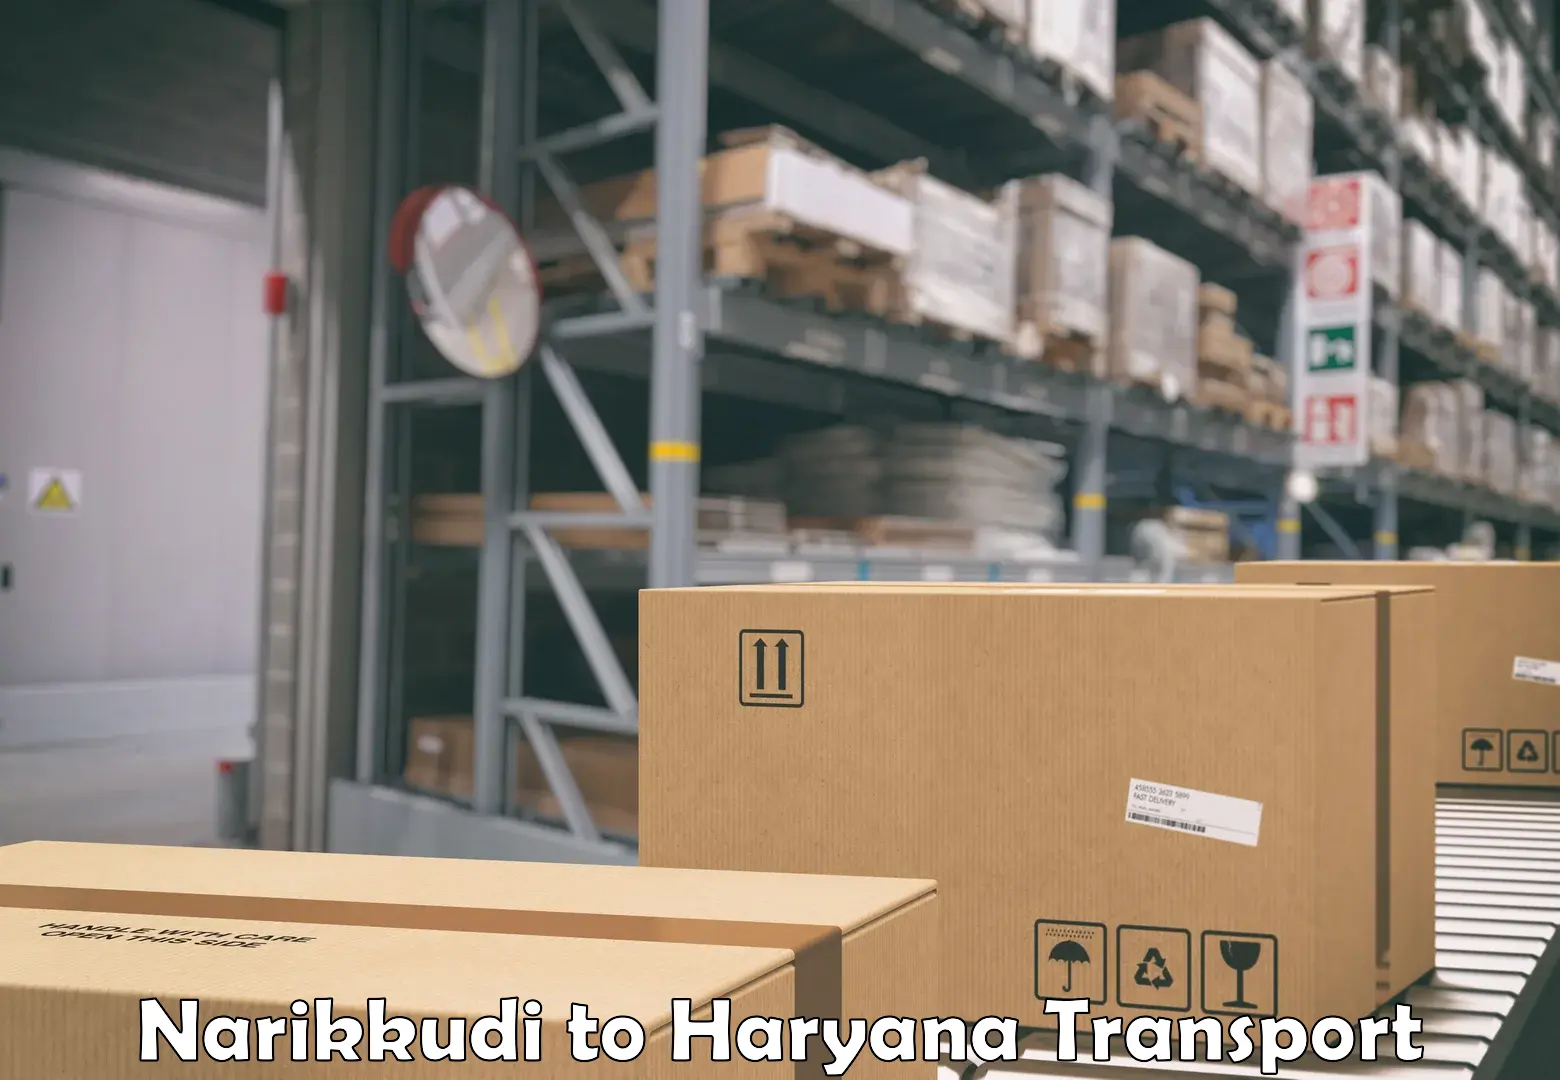 Transport bike from one state to another Narikkudi to Naraingarh